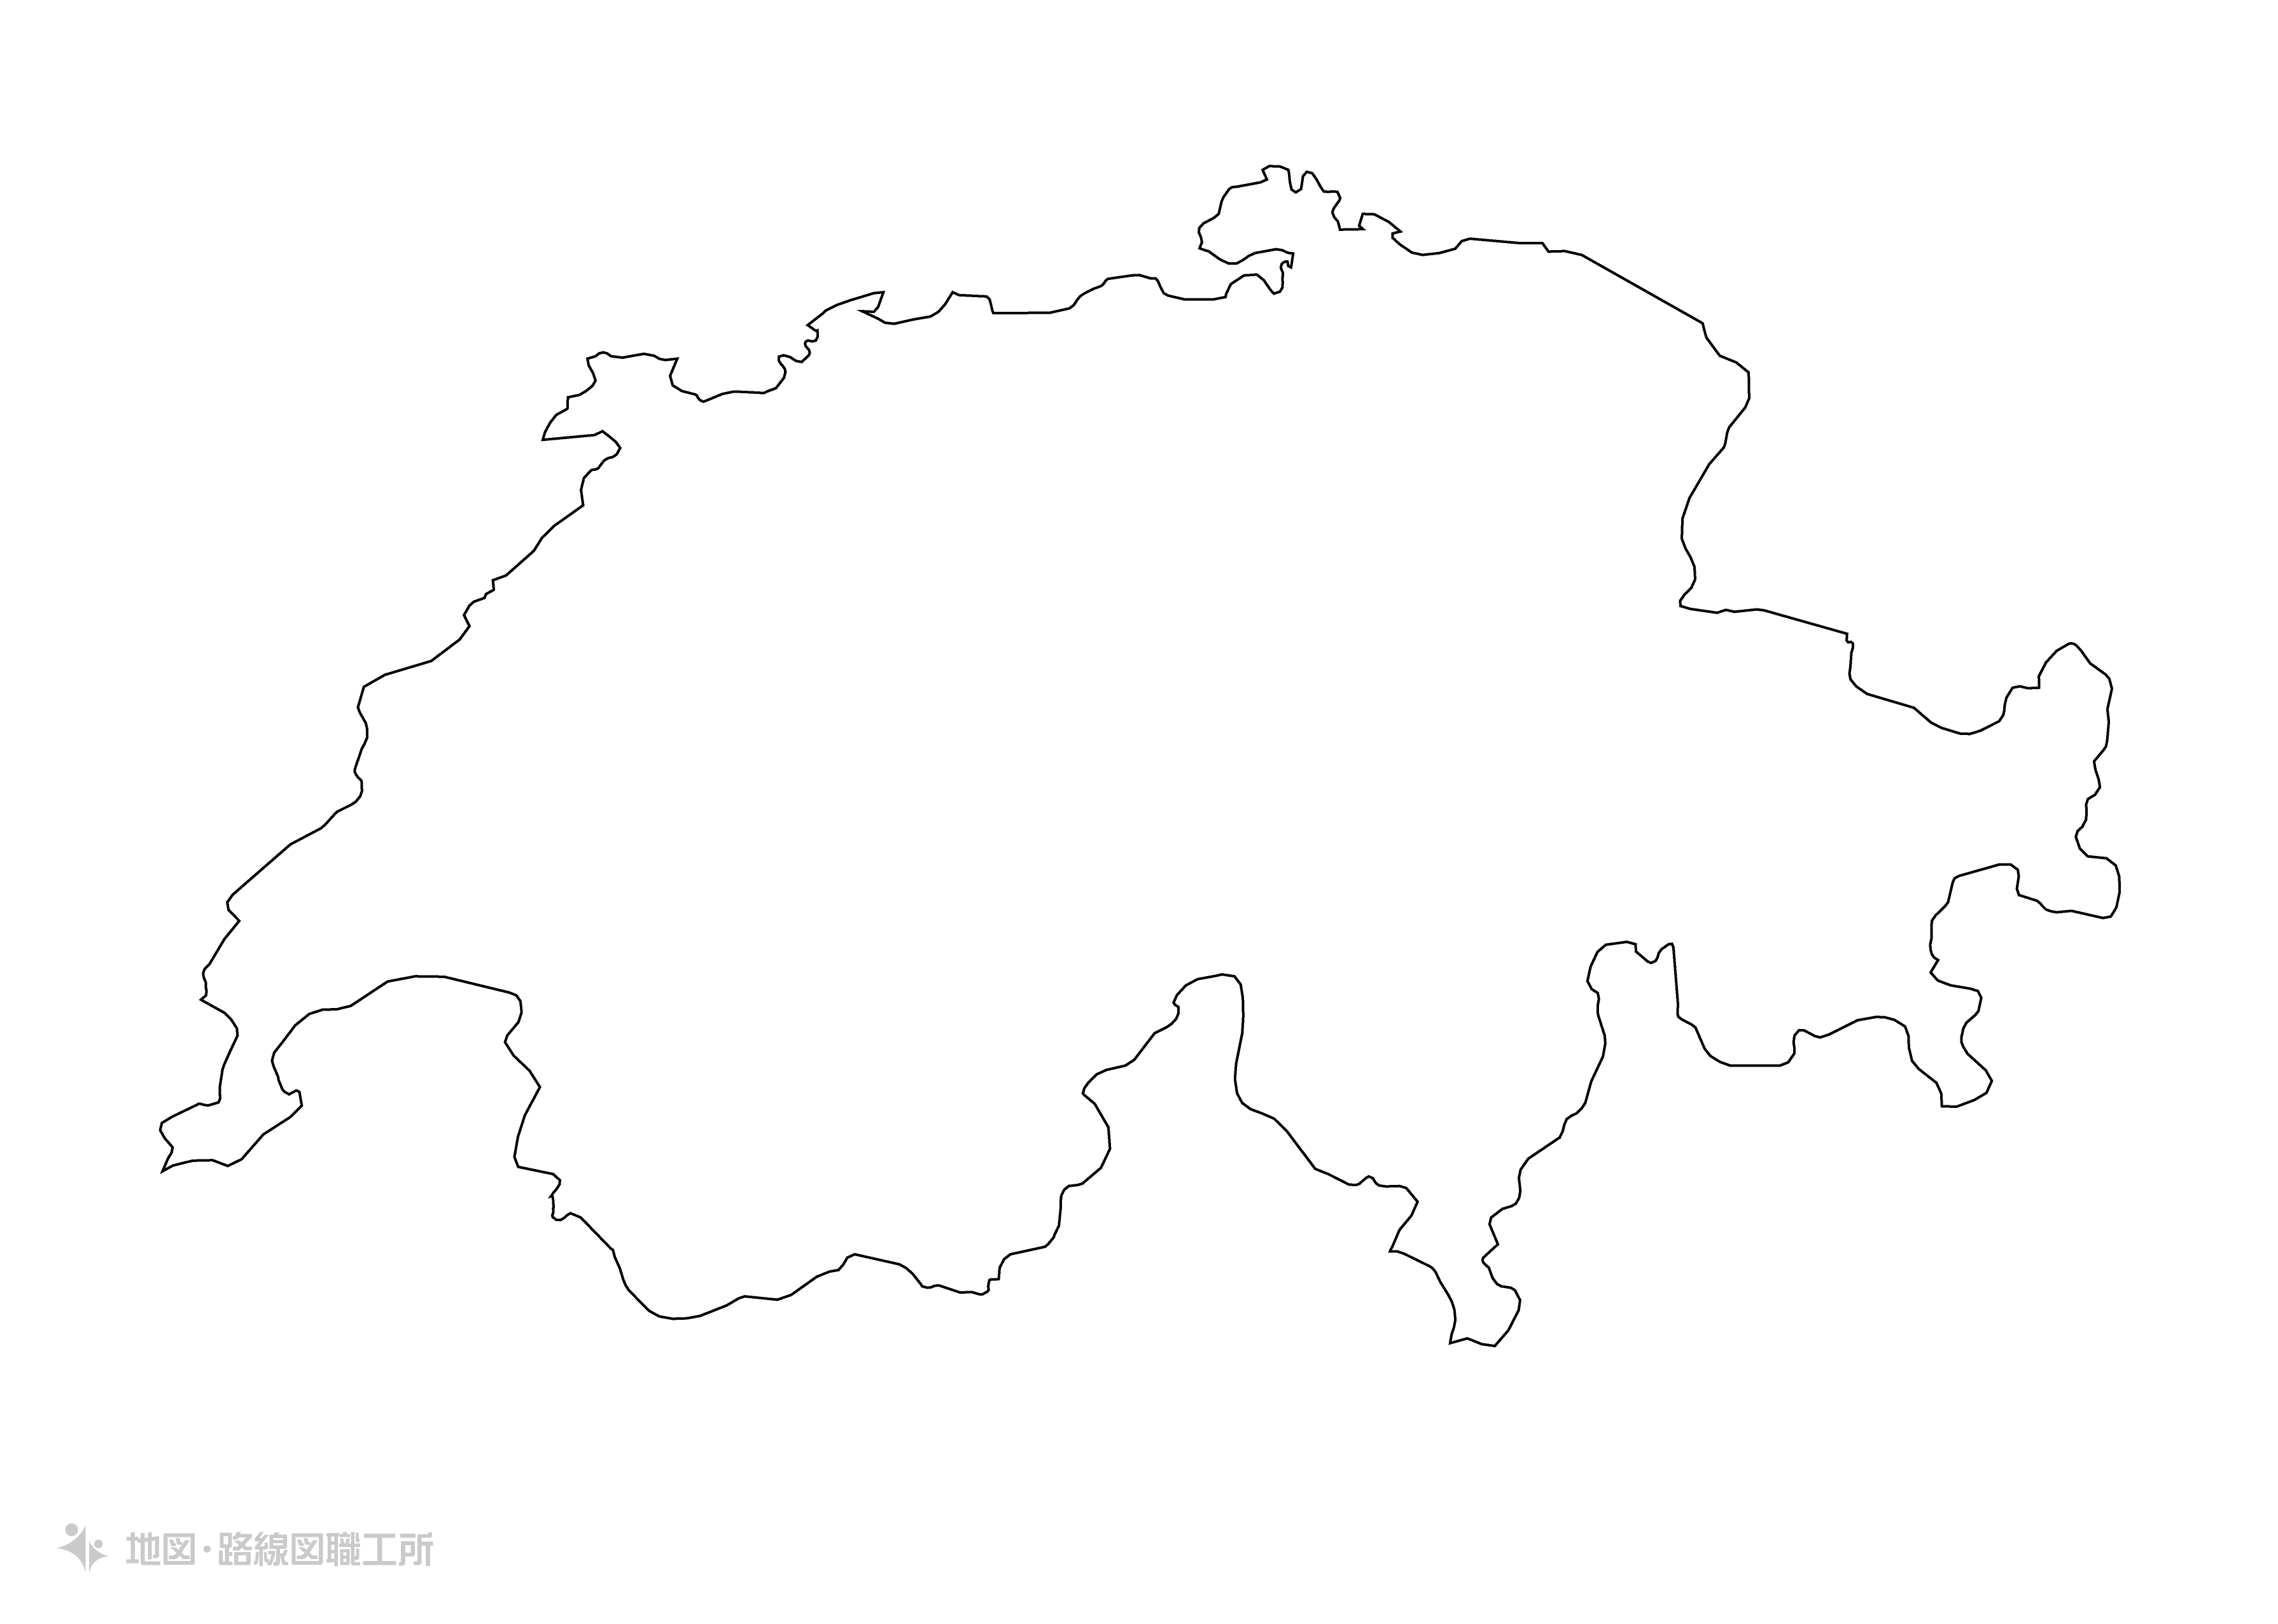 世界の白地図 スイス連邦 swiss-confederation map